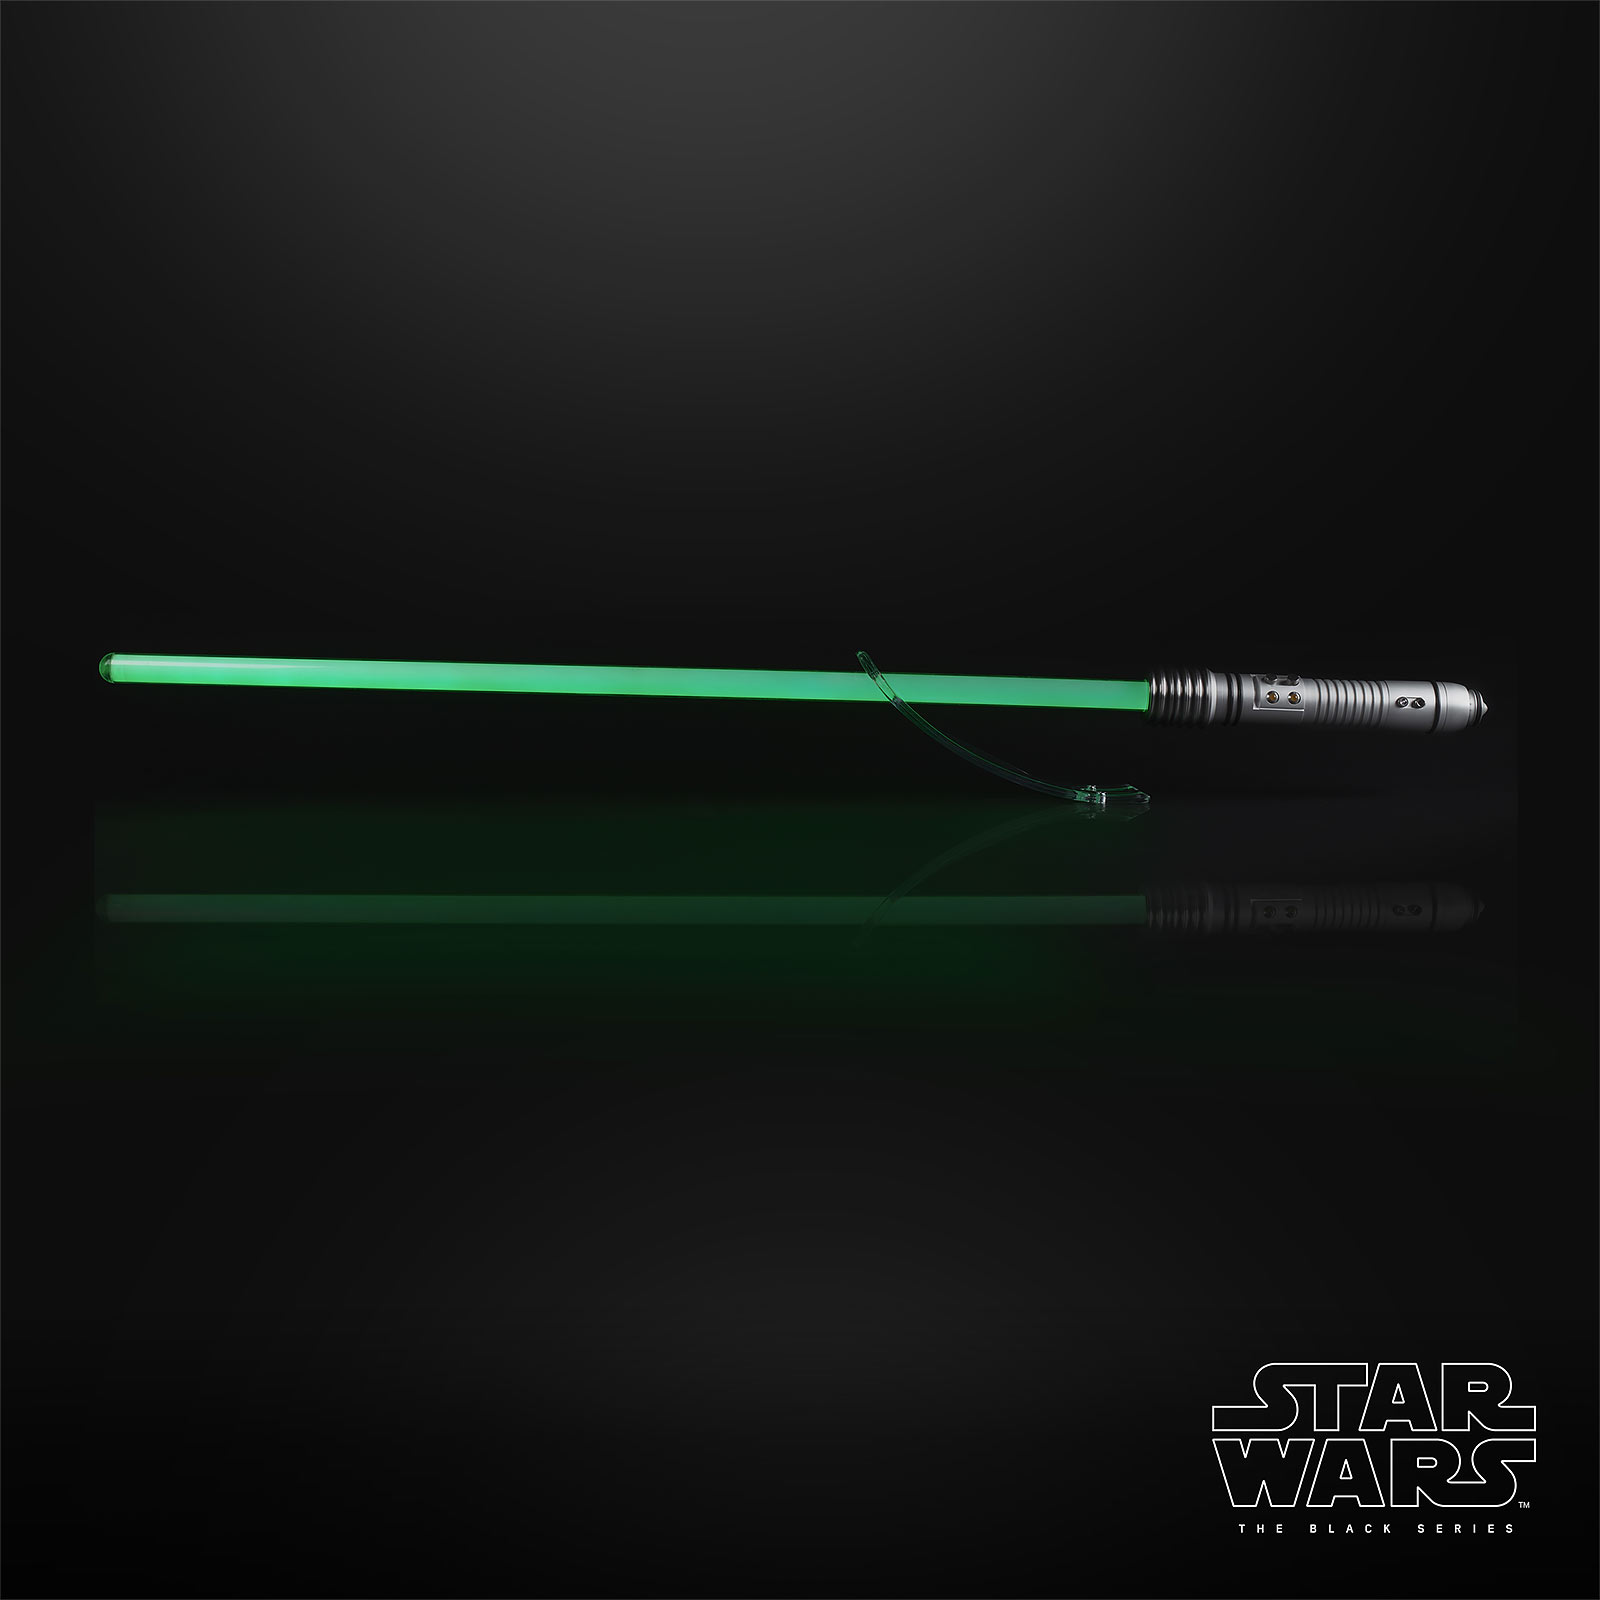 Star Wars - Kit Fisto Force FX Lichtzwaard